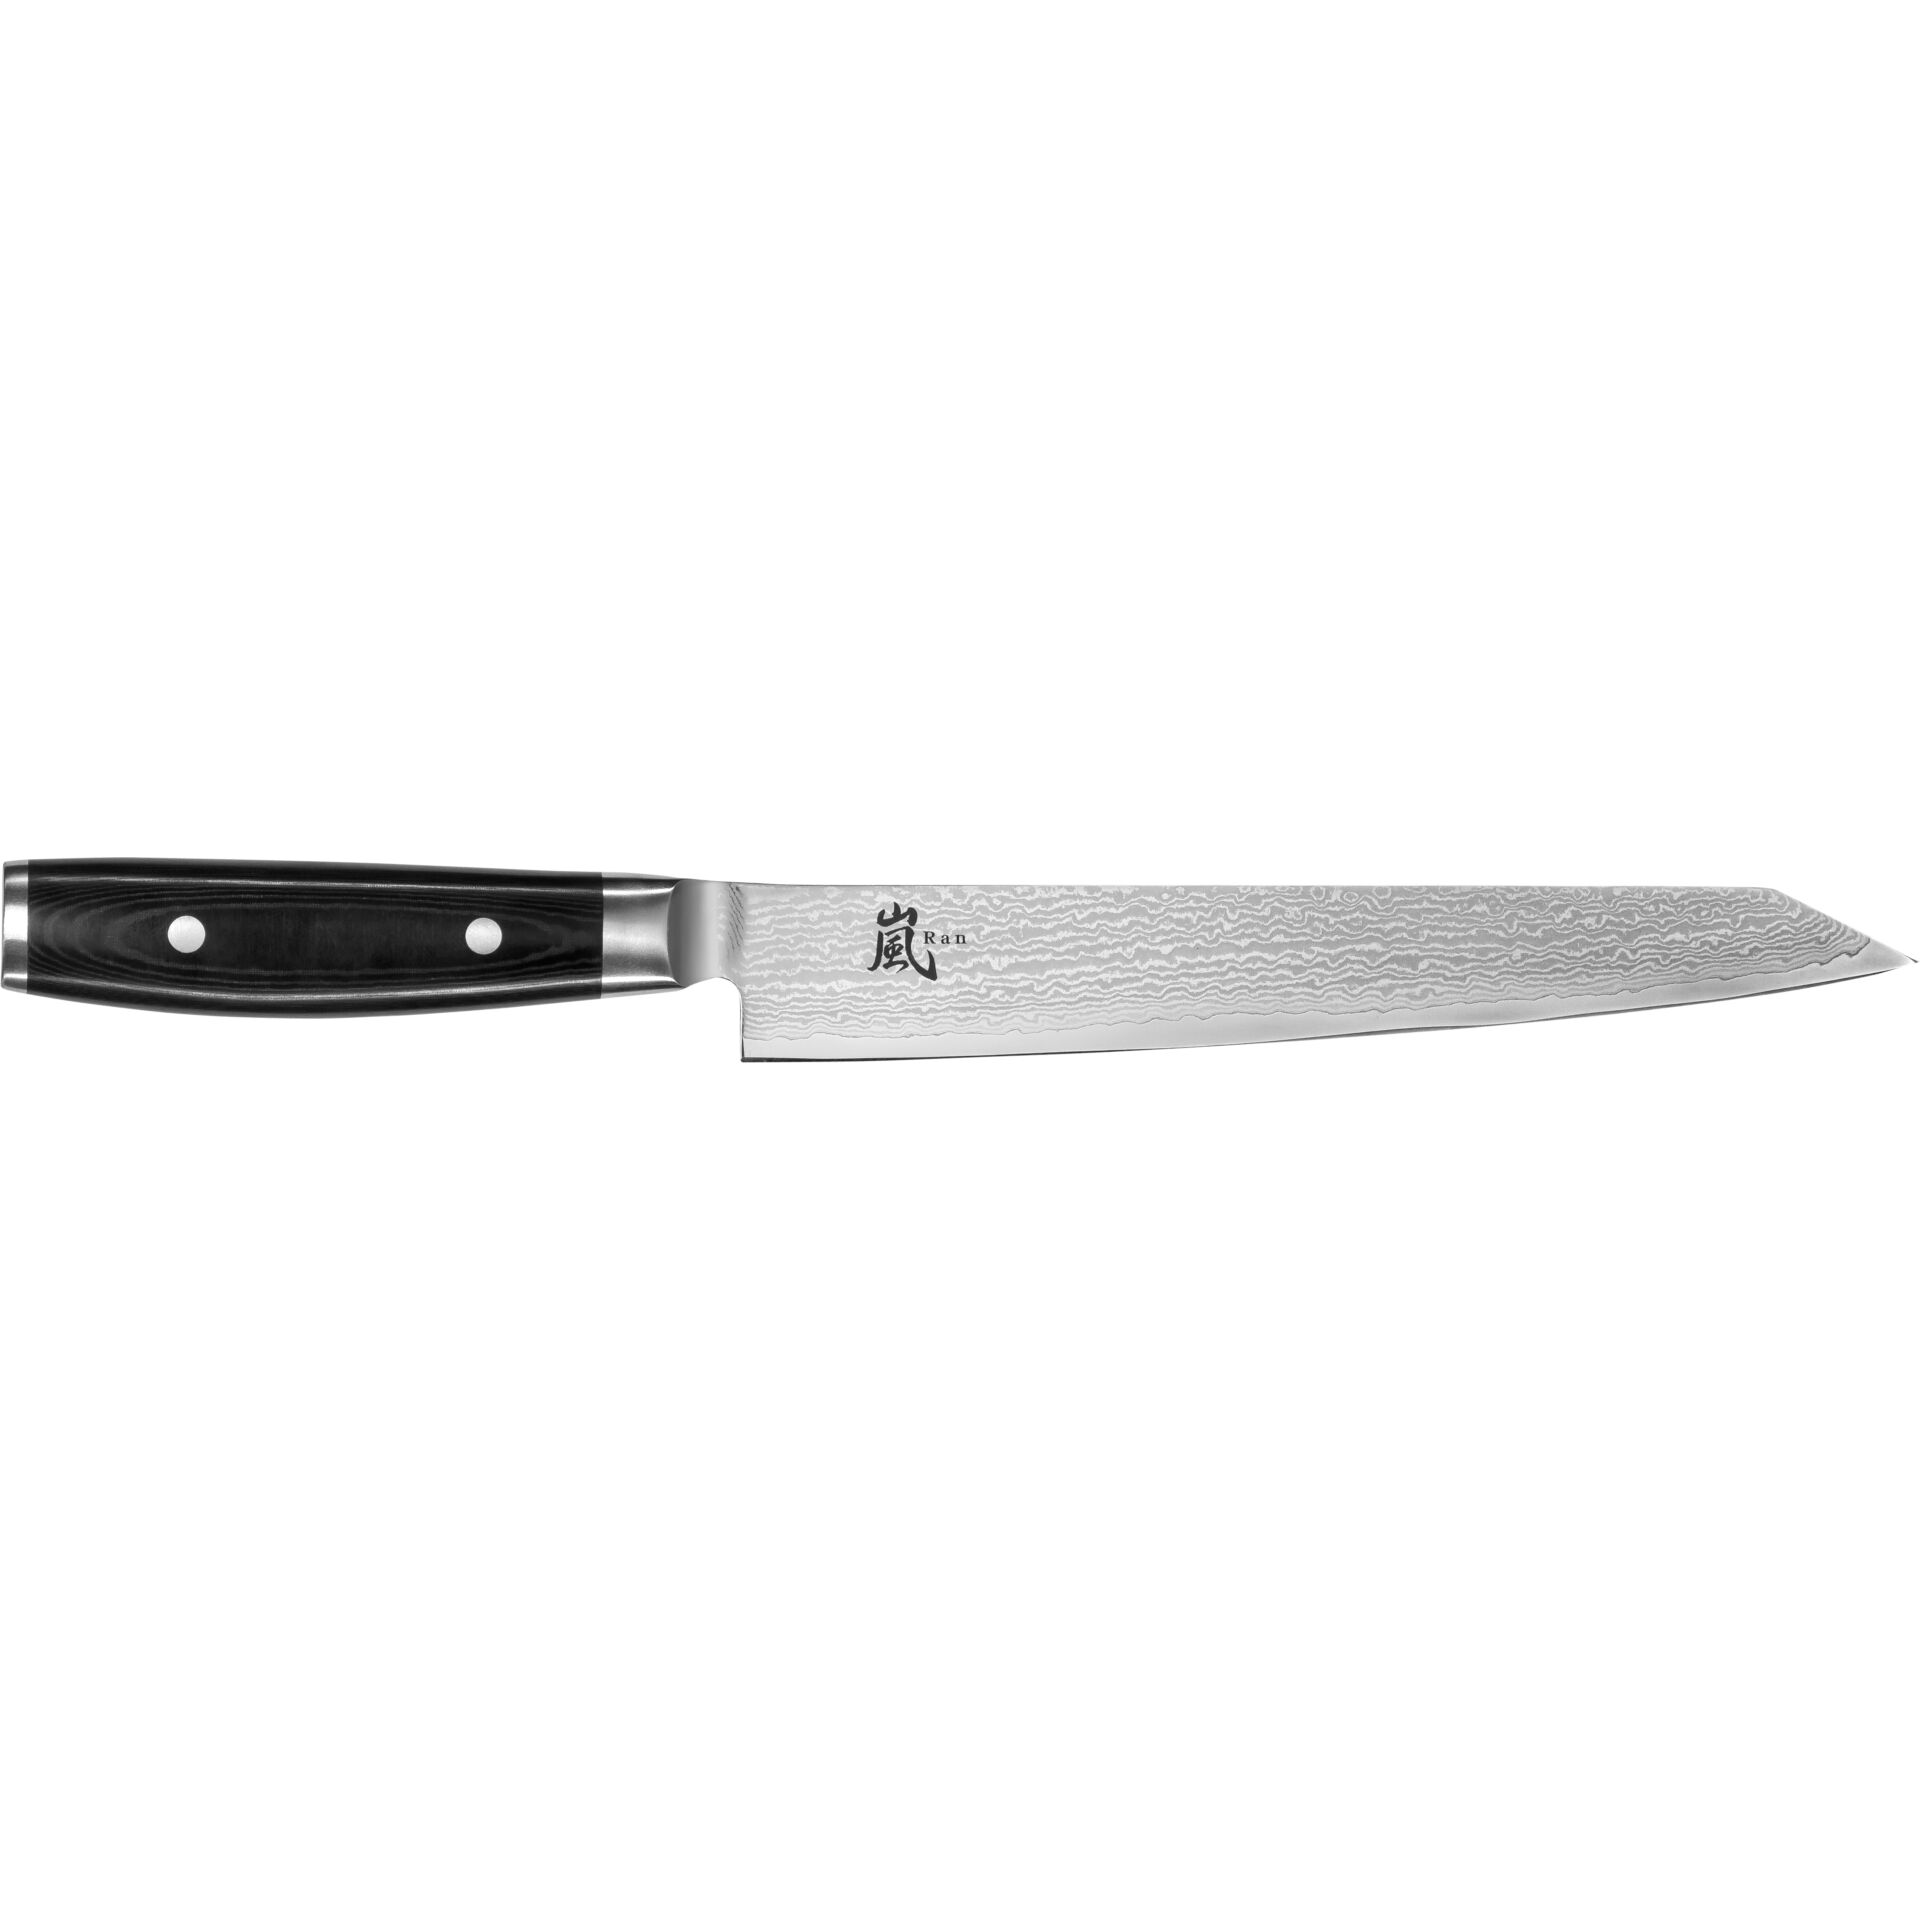 Yaxell RAN coltello per sfilettare,25.5 cm